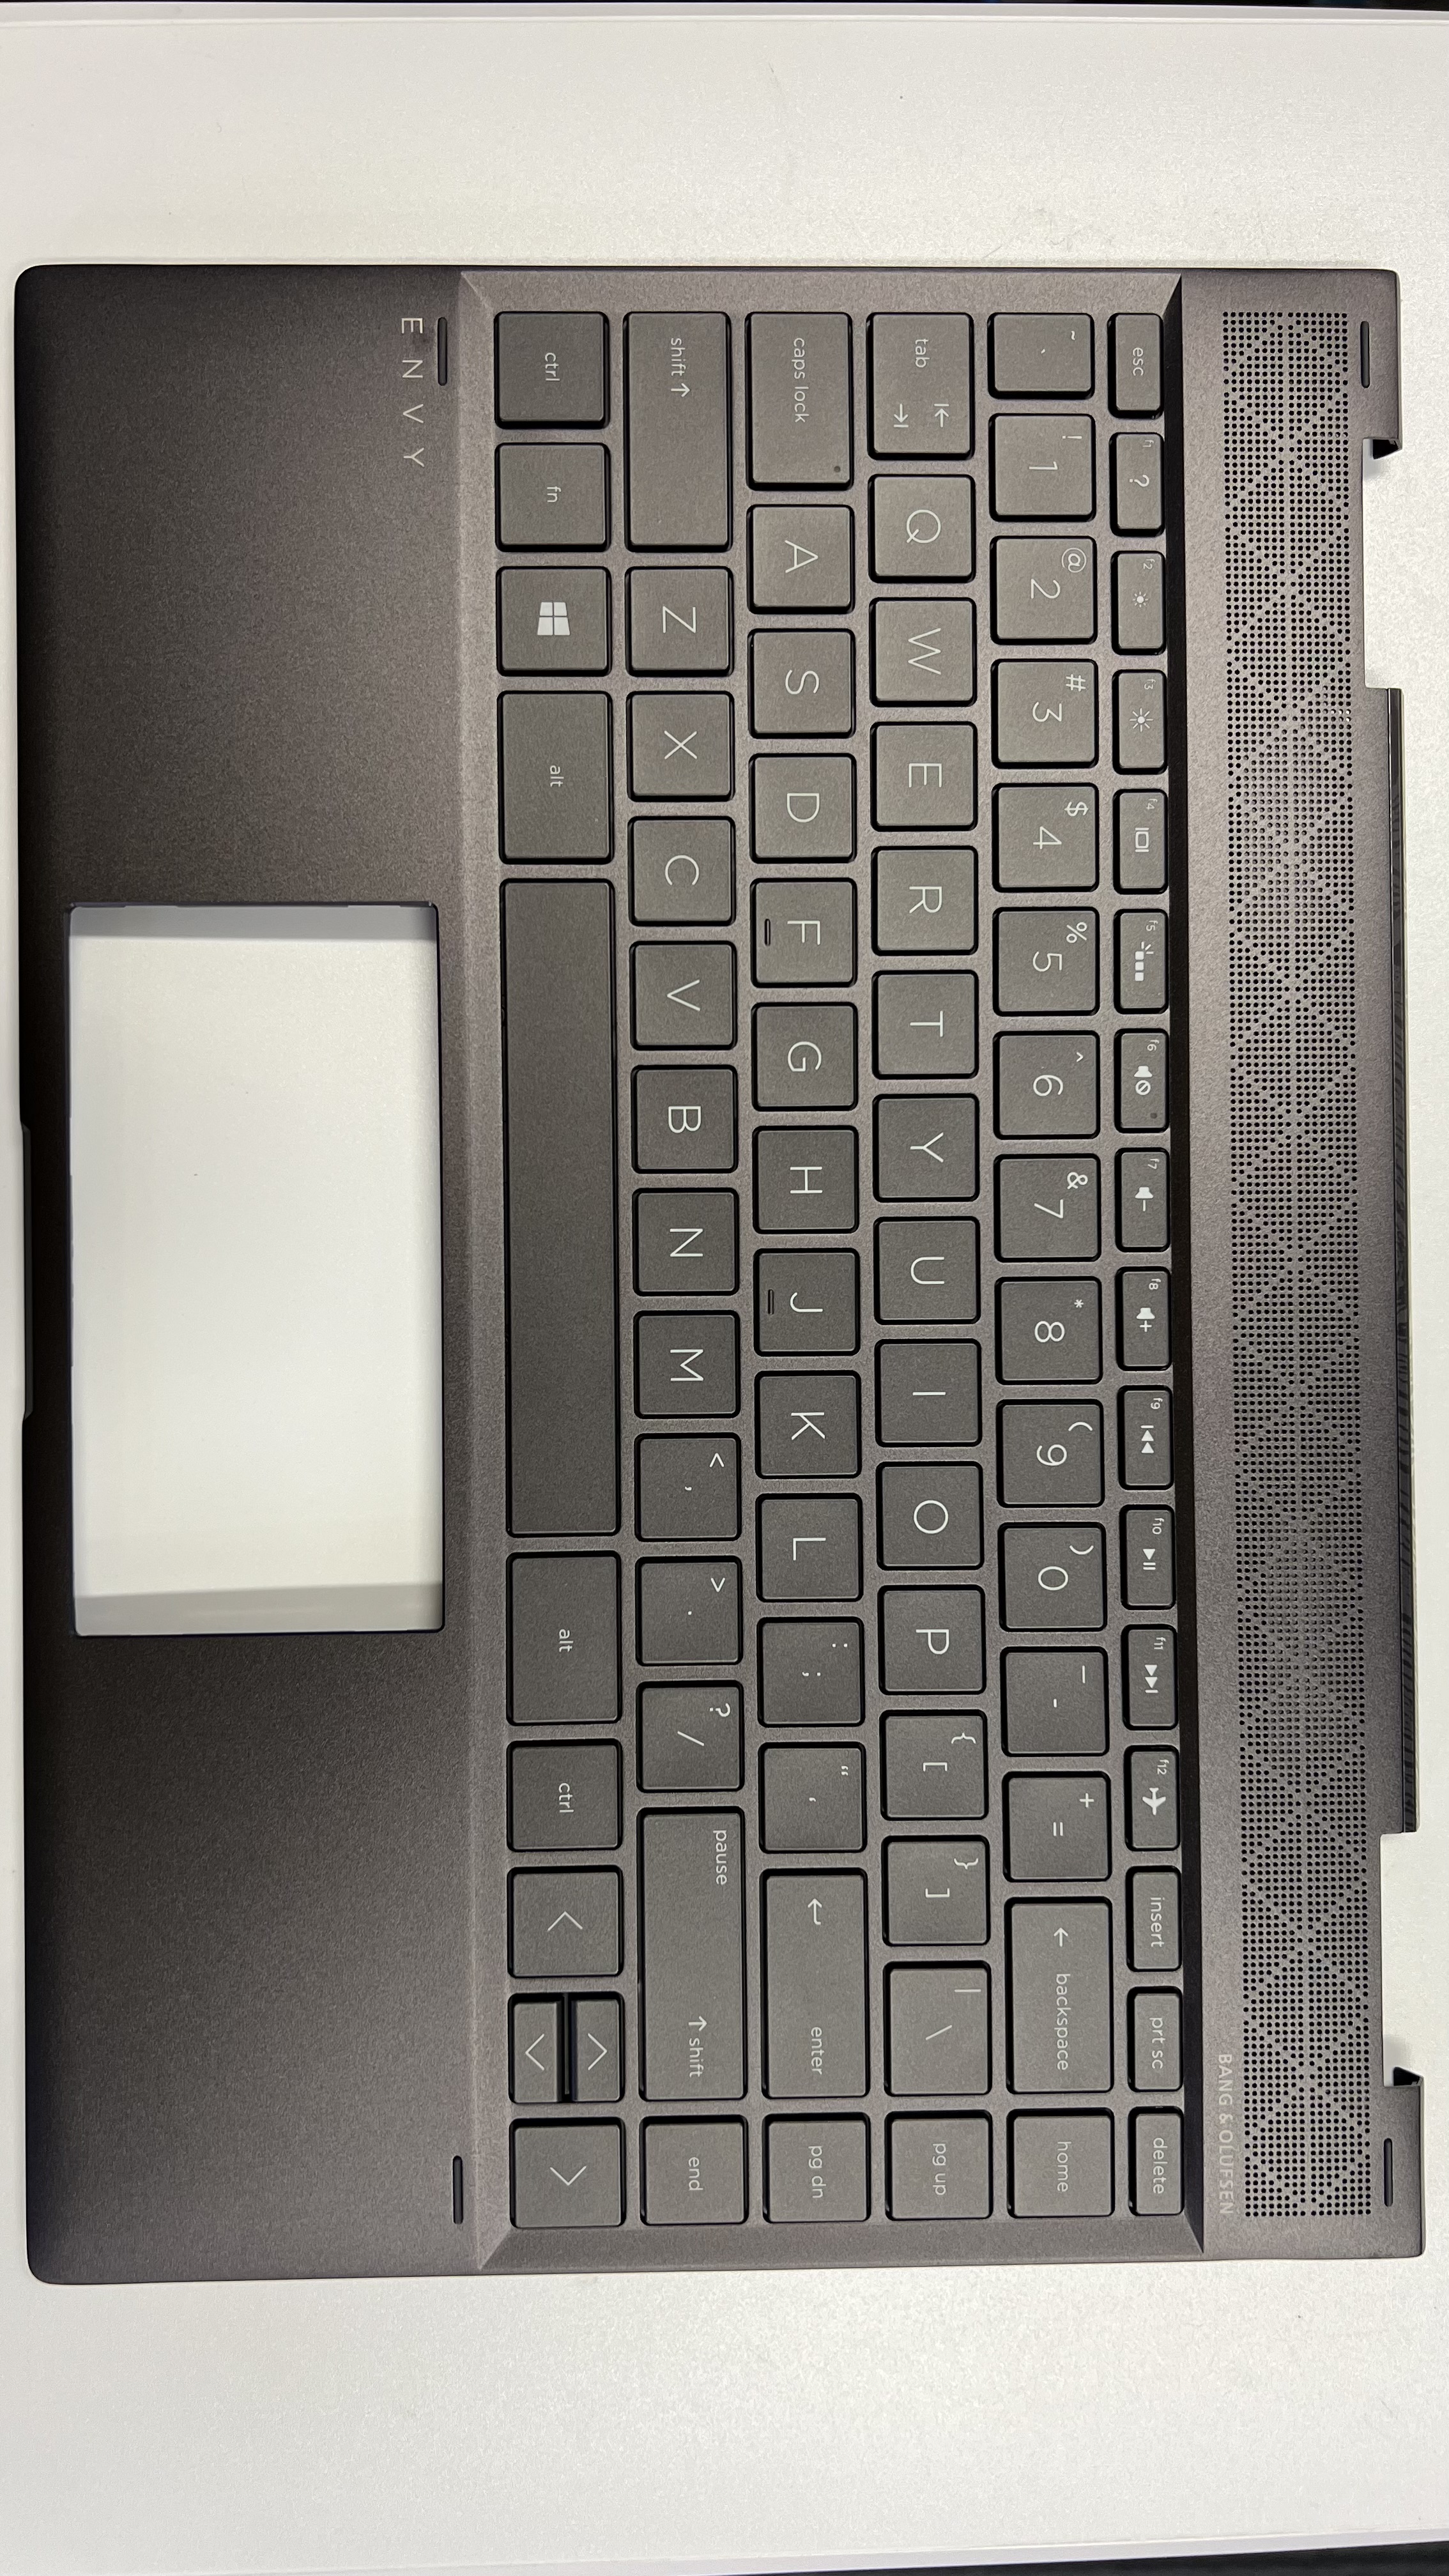 HP ENVY x360 Convertible 13-ag0002AU (4KT88PA) Keyboard L19586-001